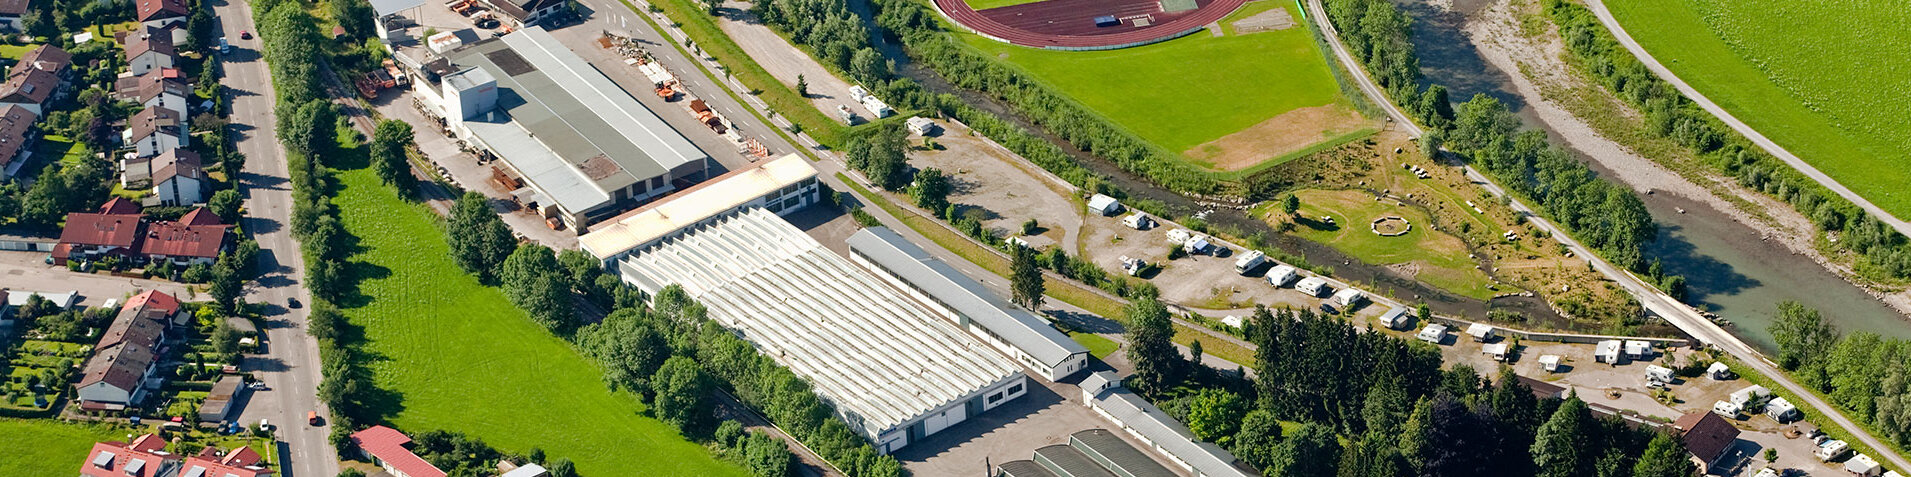 Drohnenaufnahme vom Gelände der Firma Röhrs mit sämtlichen Produktionsstätten und Verwaltungsgebäuden in Sonthofen